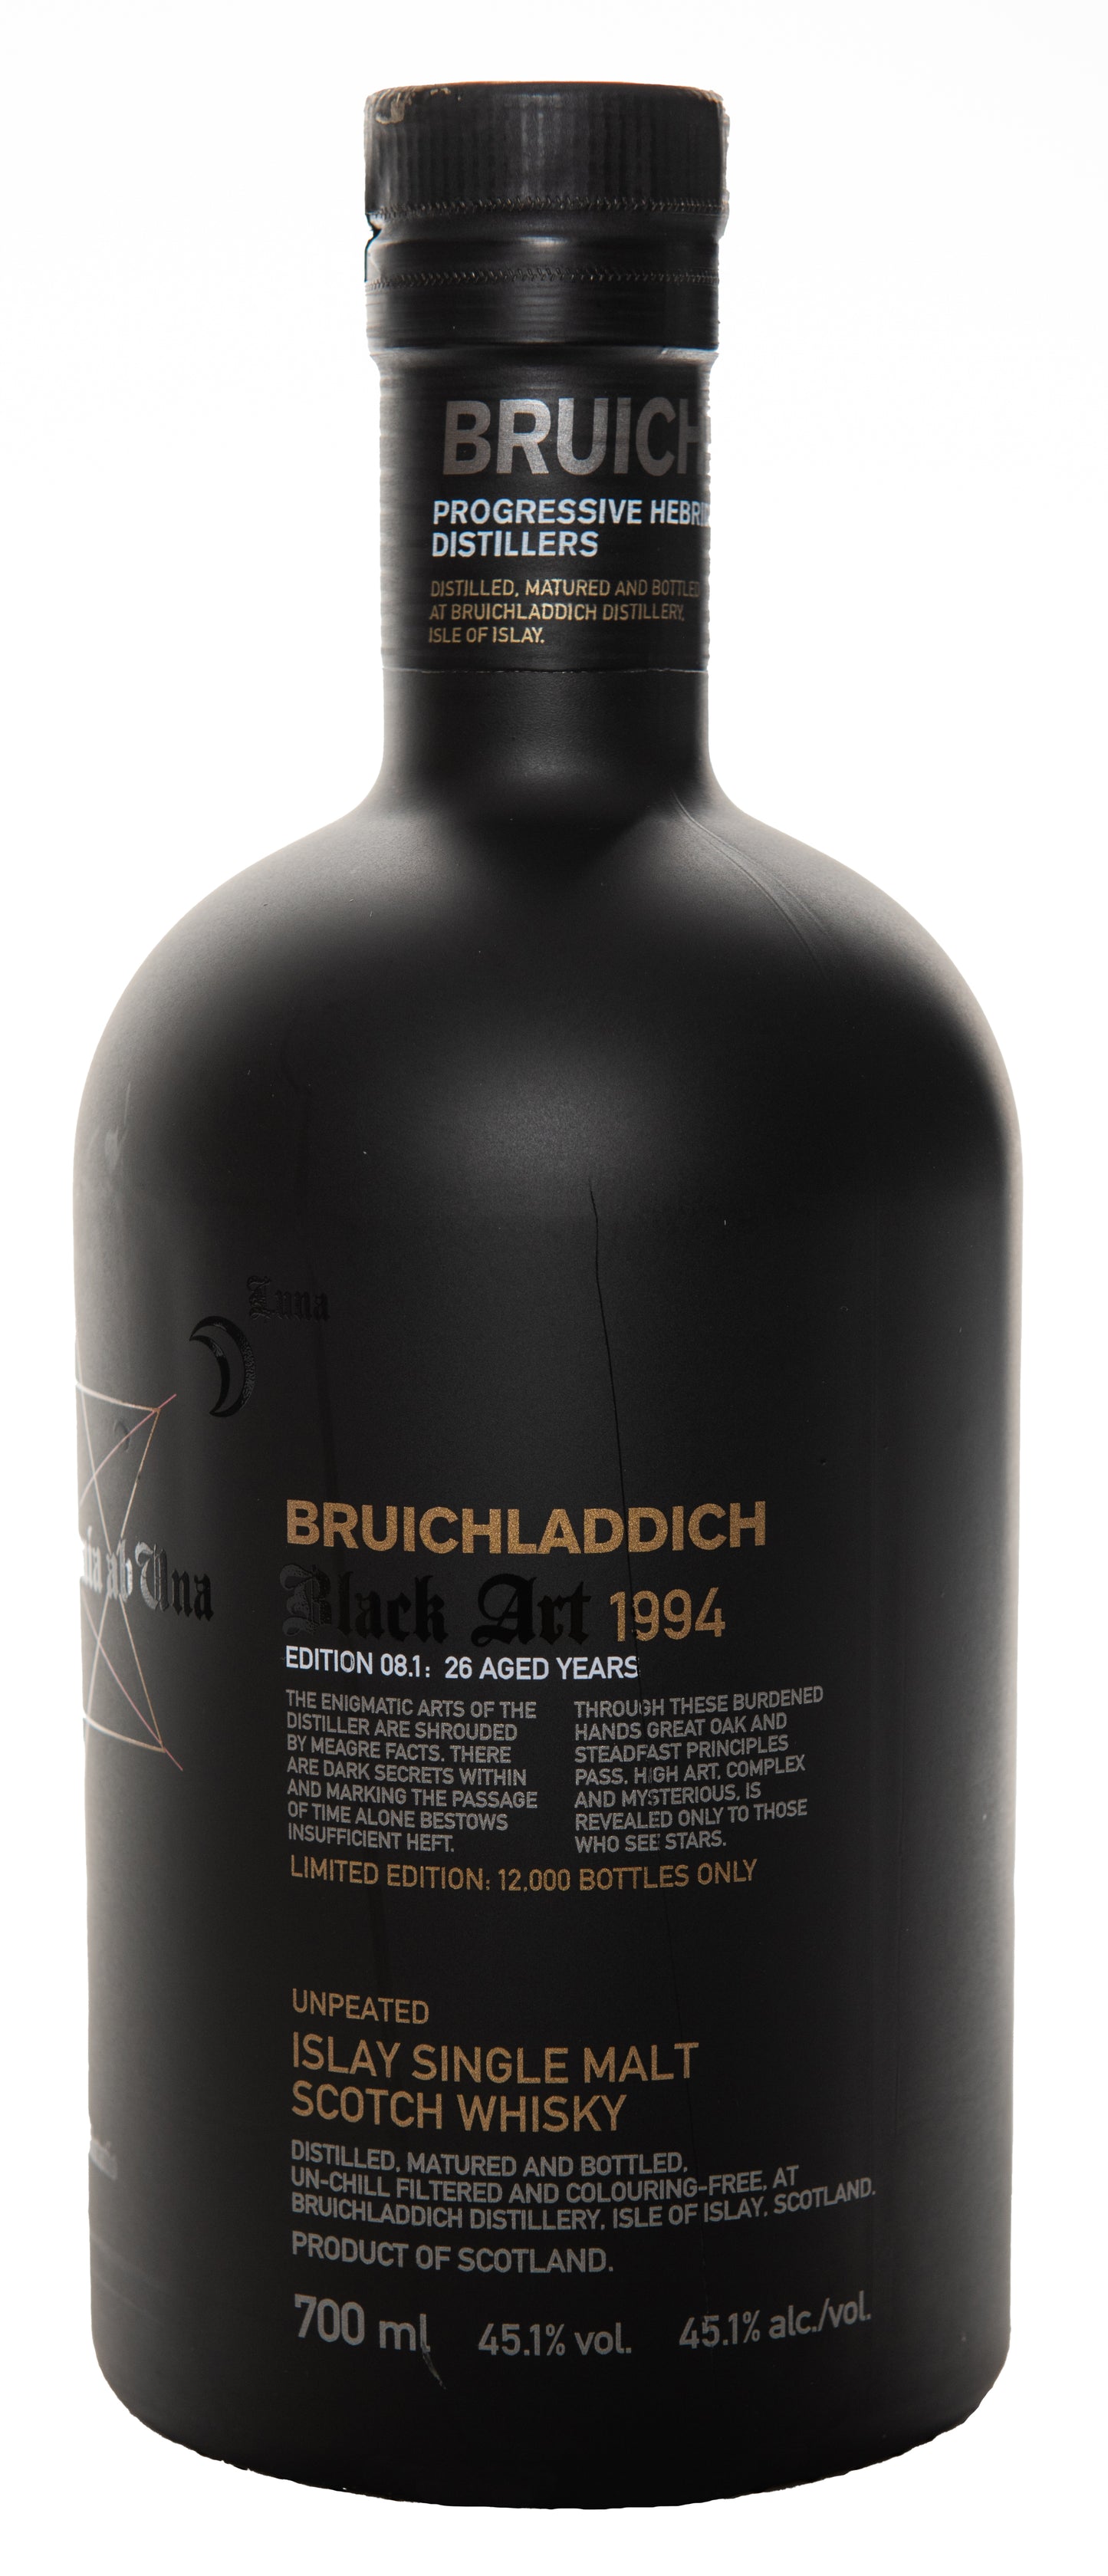 Bruichladdich Black Art 8.1 (ohne GB)